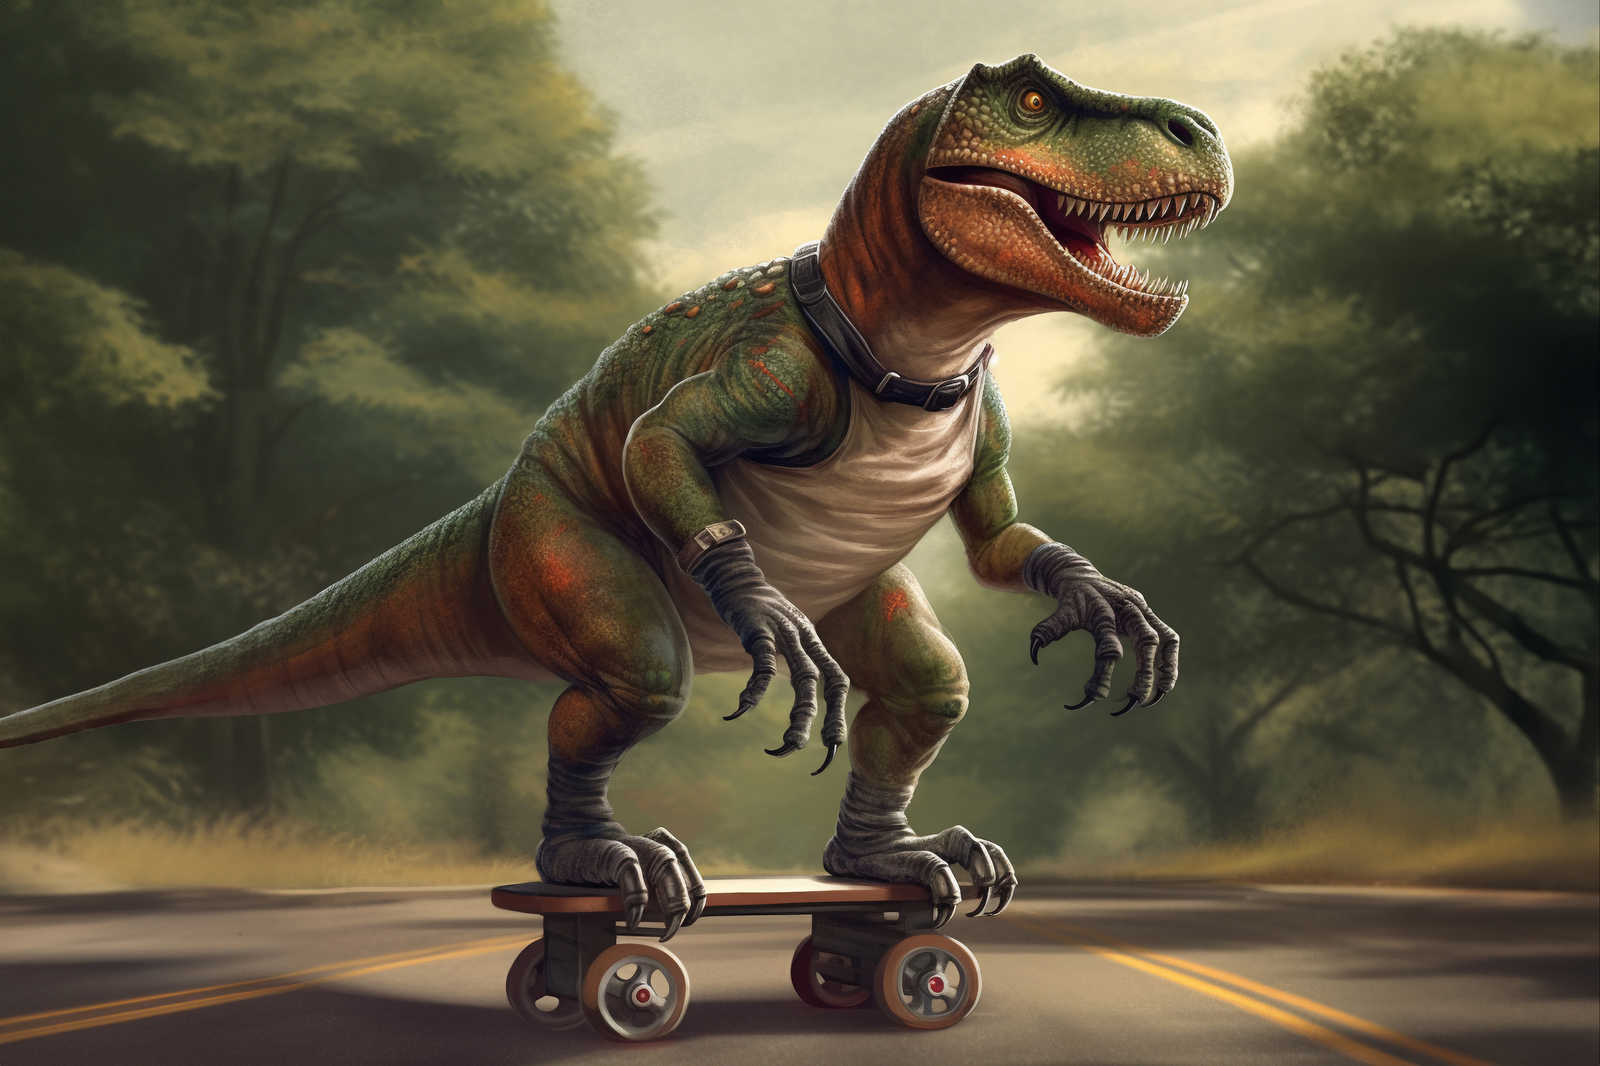             KI-Leinwandbild »skating t-rex« – 120 cm x 80 cm
        